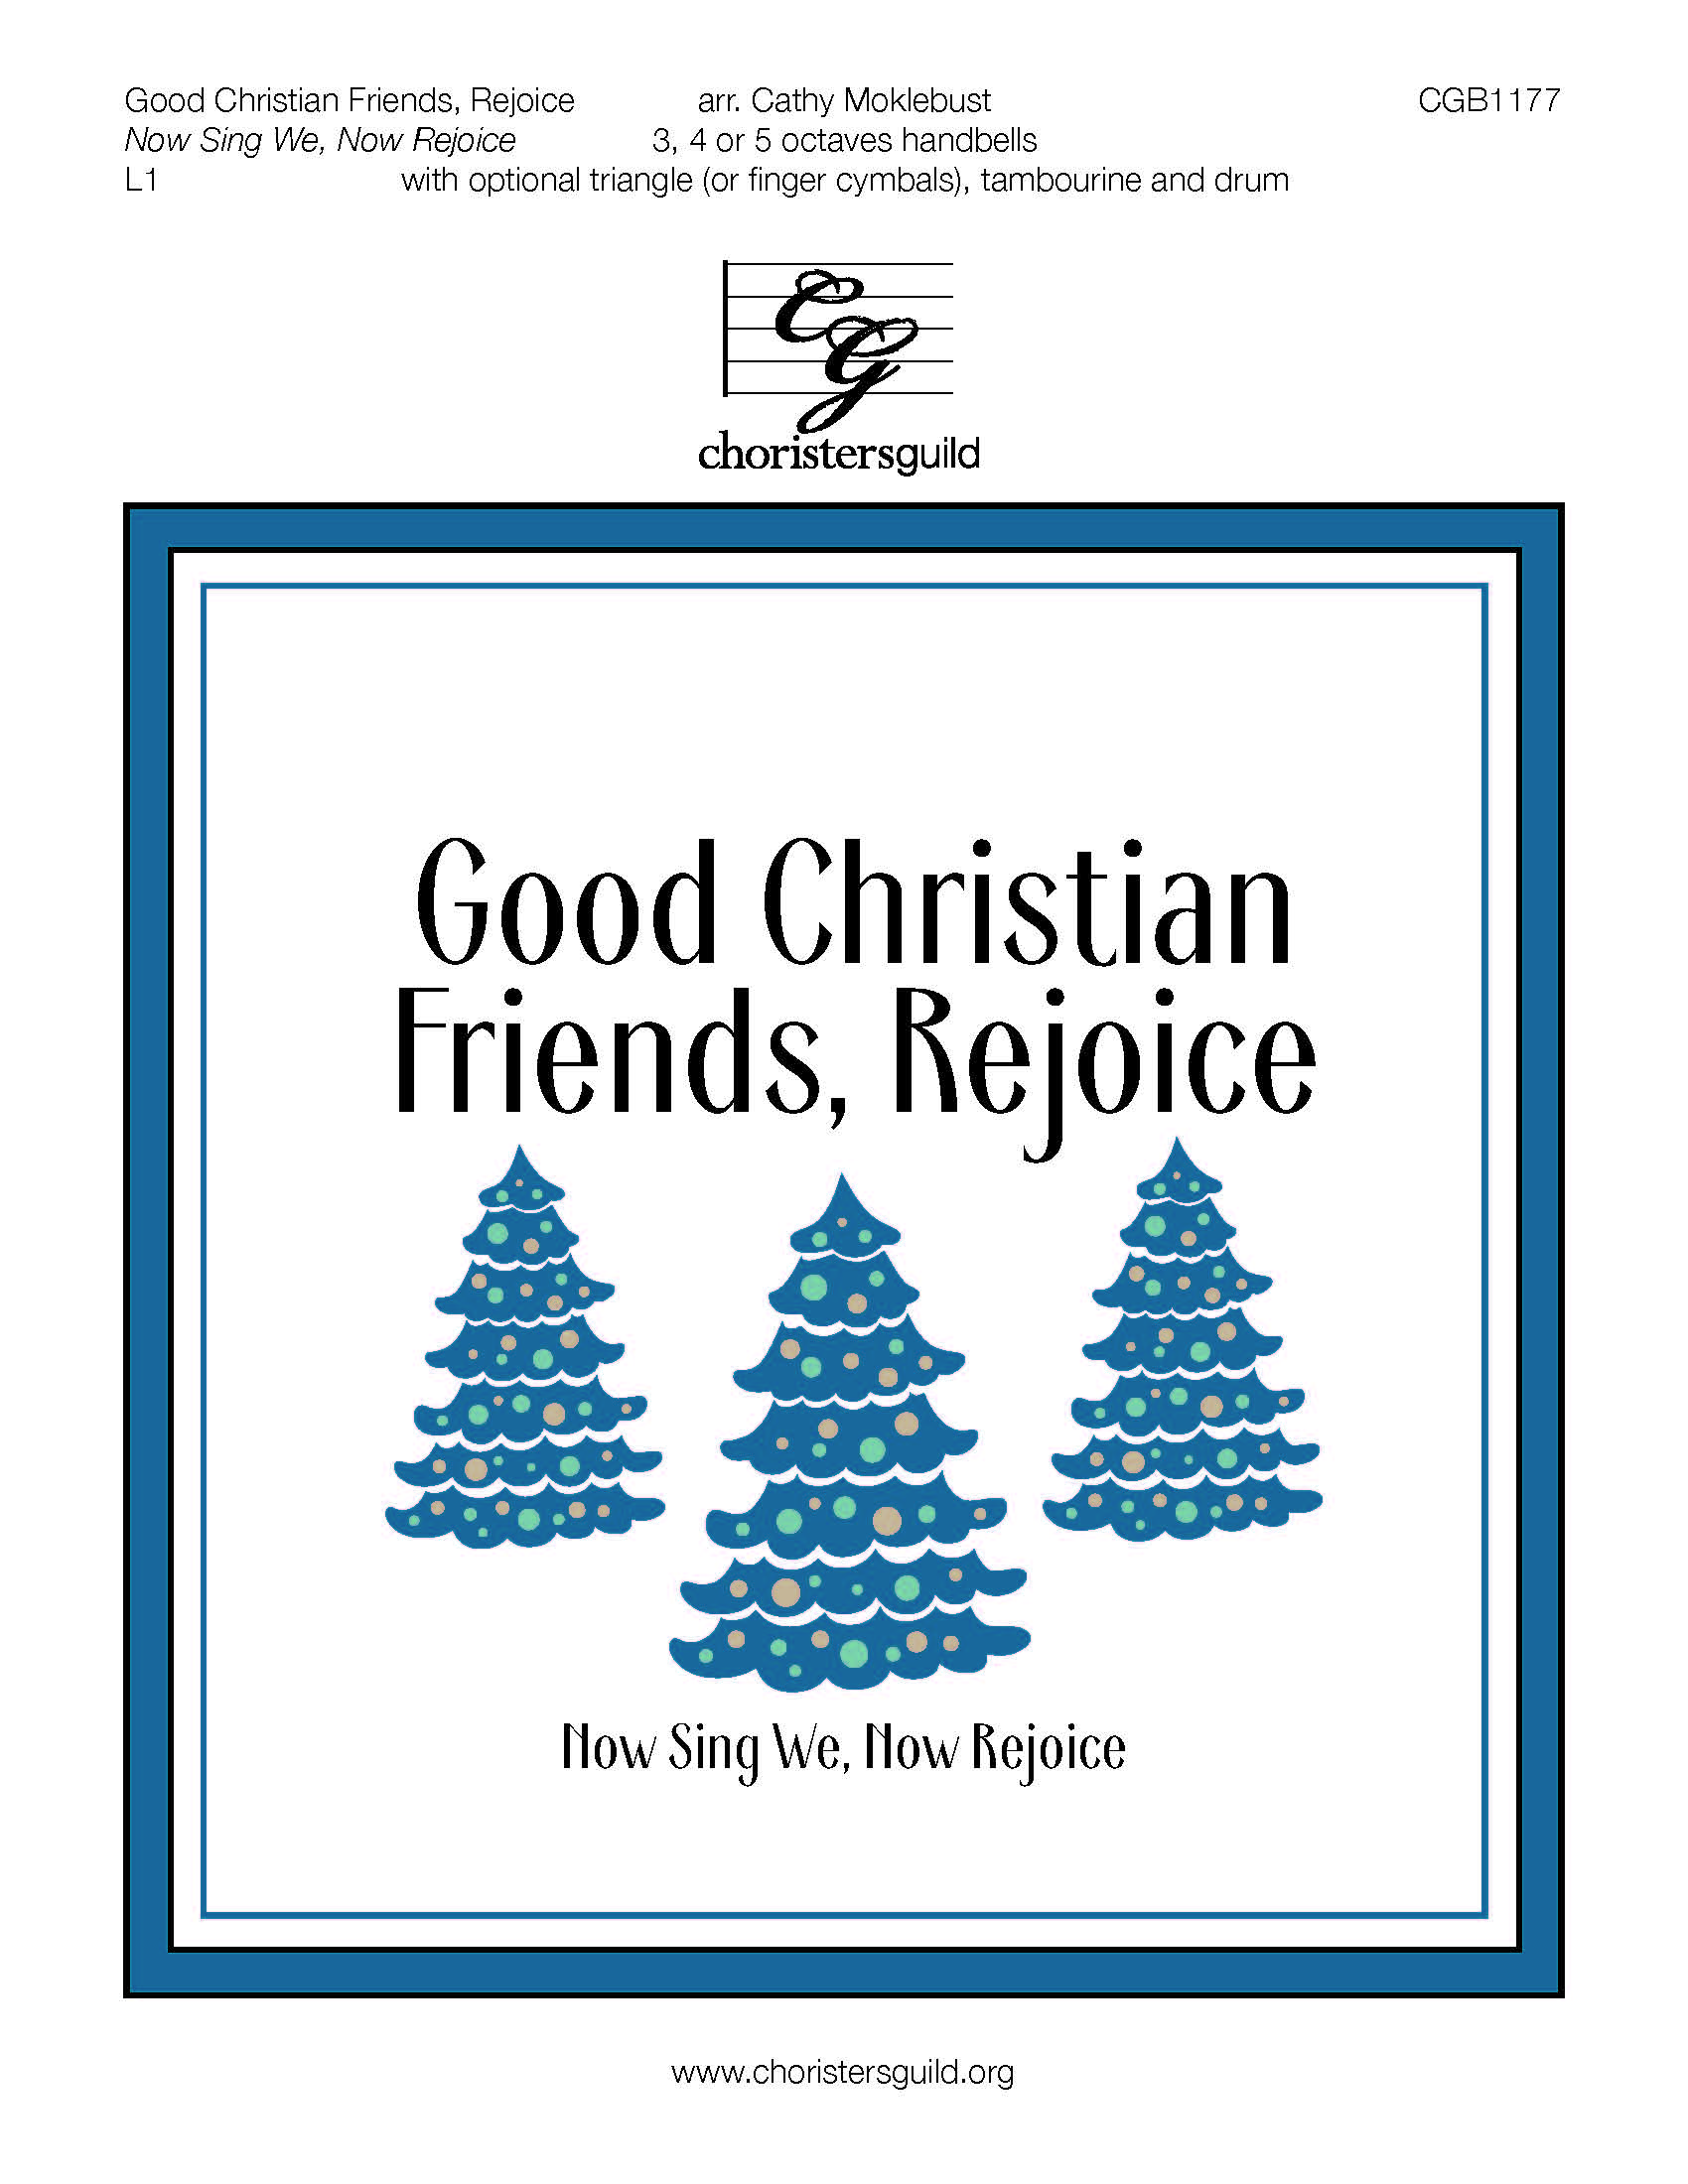 CGB1177 Good Christian Friends Rejoice